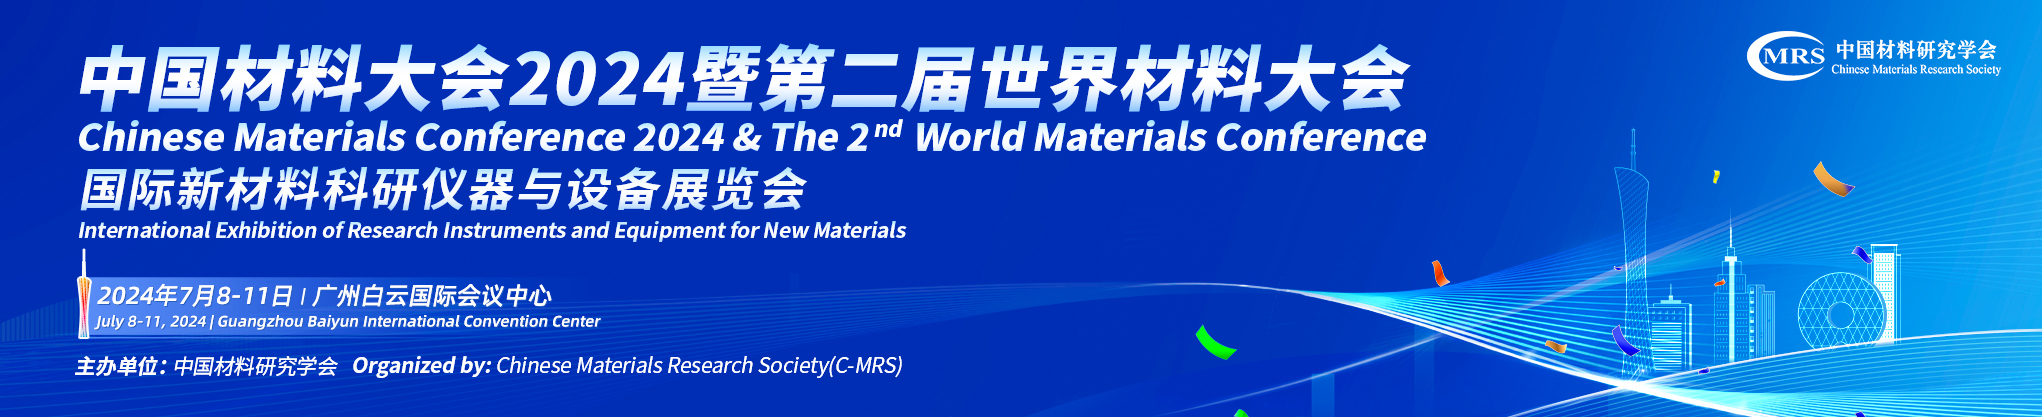 中国材料大会2024暨第二届世界材料大会